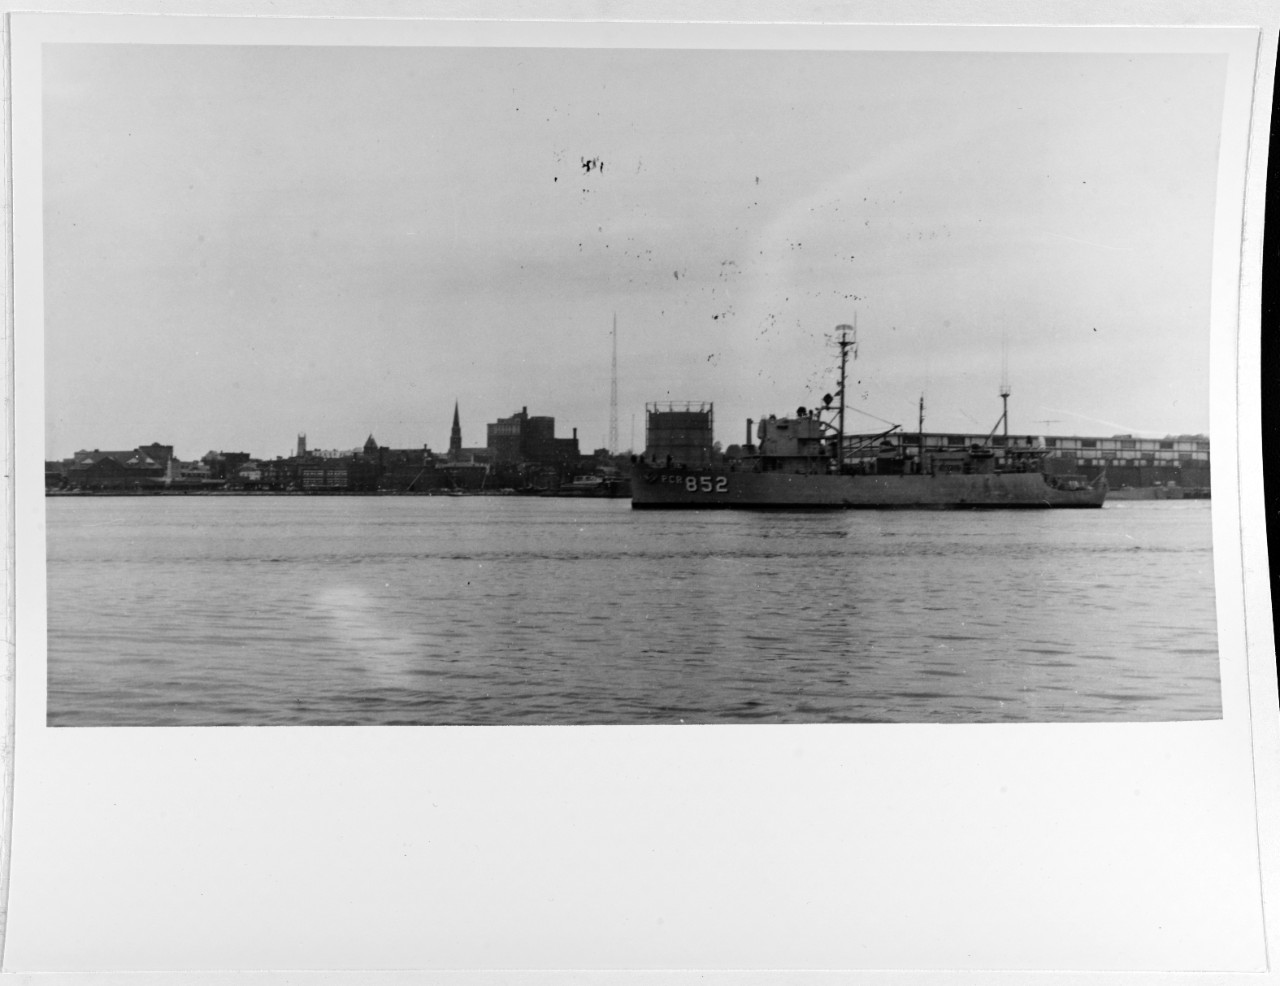 USS BRATTLEBORO (PCER-852)